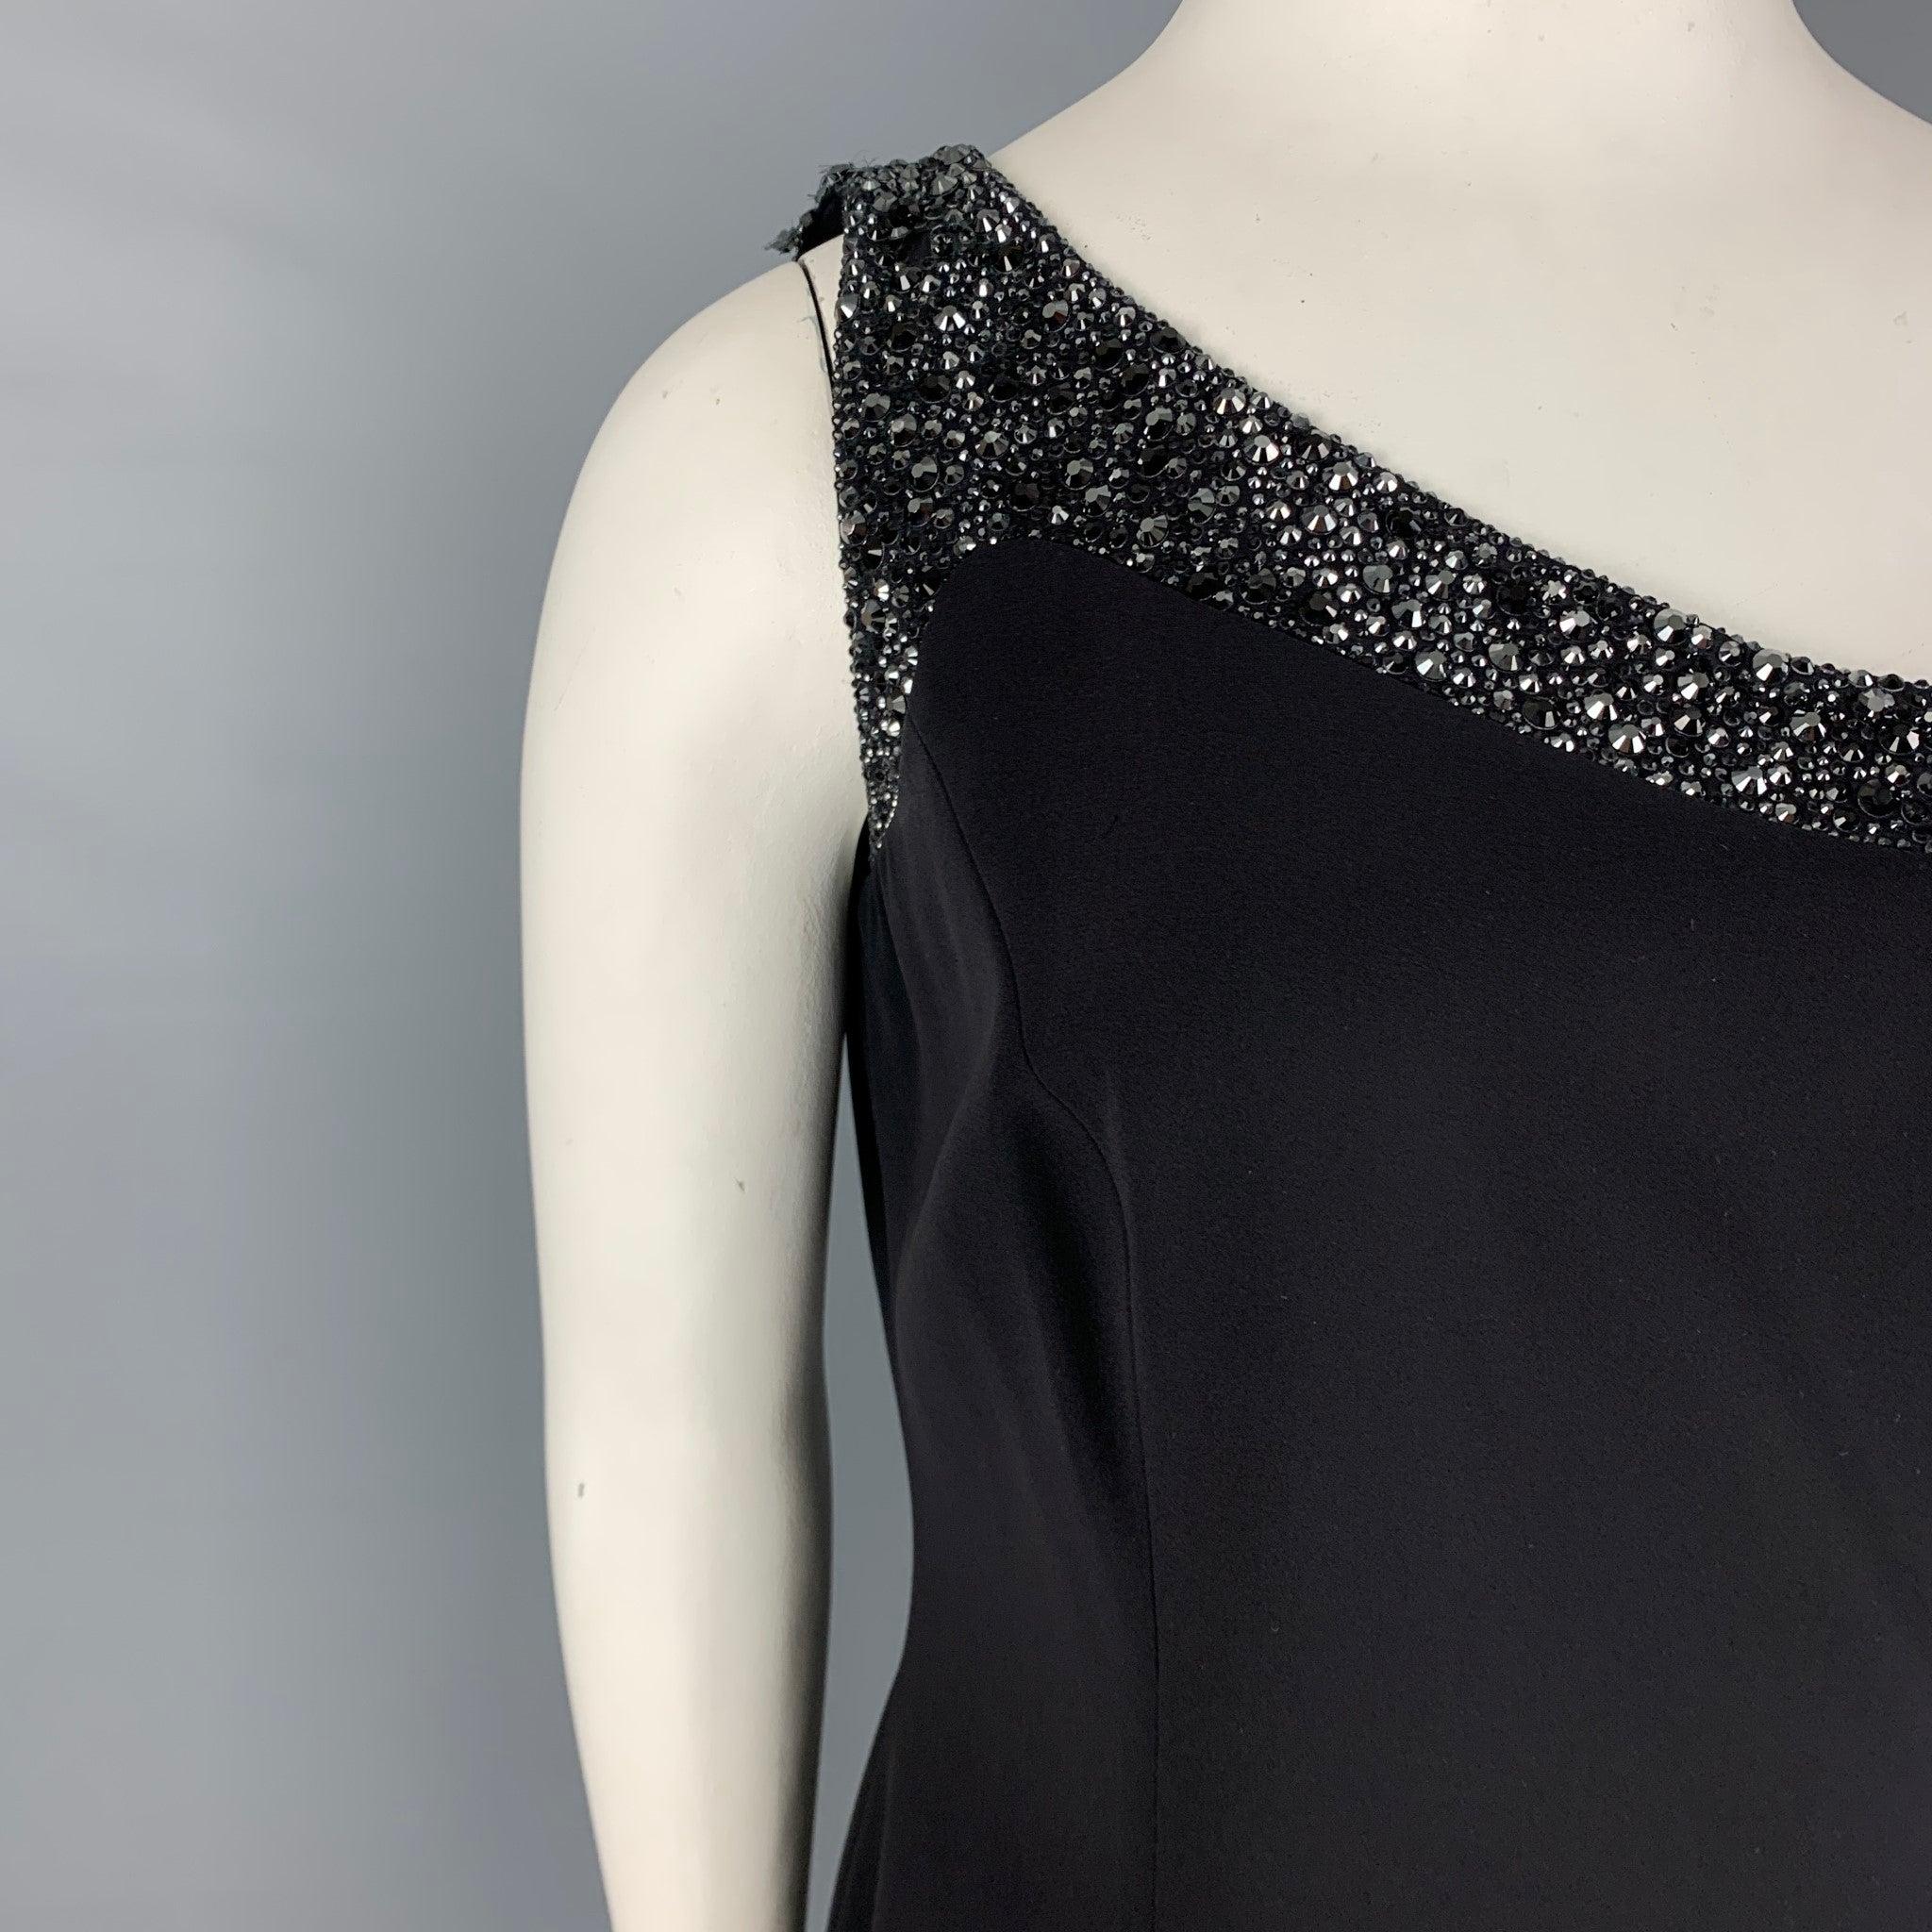 GIORGIO ARMANI Kleid aus schwarzem MATERIAL mit Strassbesatz, Wickeloptik, geschlitzten Taschen und seitlichem Reißverschluss. Hergestellt in Italien.
Sehr guter gebrauchter Zustand. Mäßige Abnutzung an der Schulter. So wie es ist.  

Markiert:   48